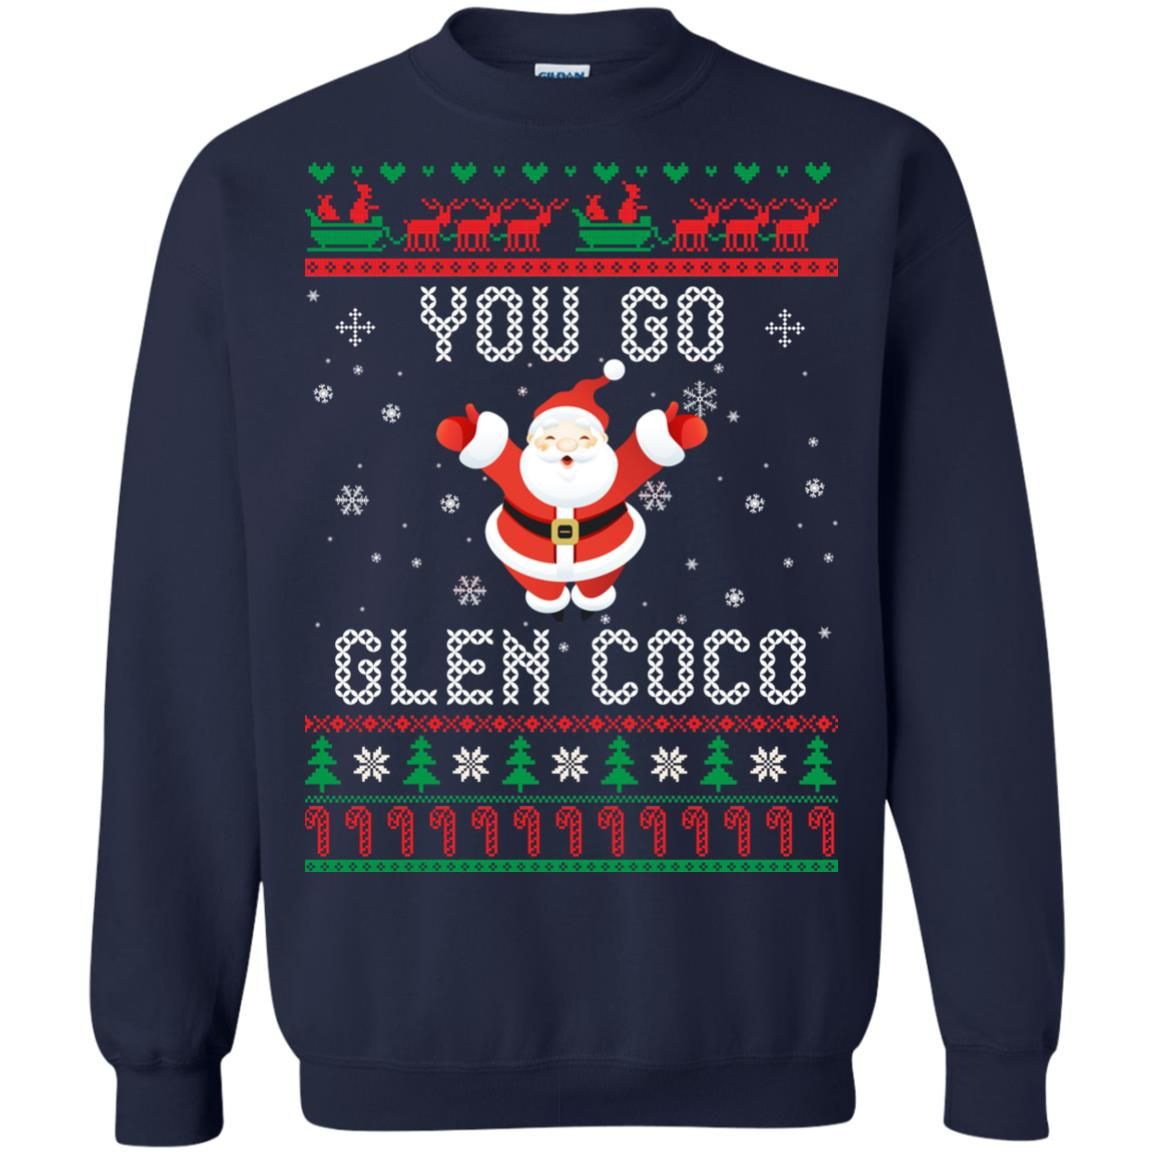 You Go Glen Coco Santa Claus Lover Christmas Sweatshirt Style: Sweatshirt, Color: Navy